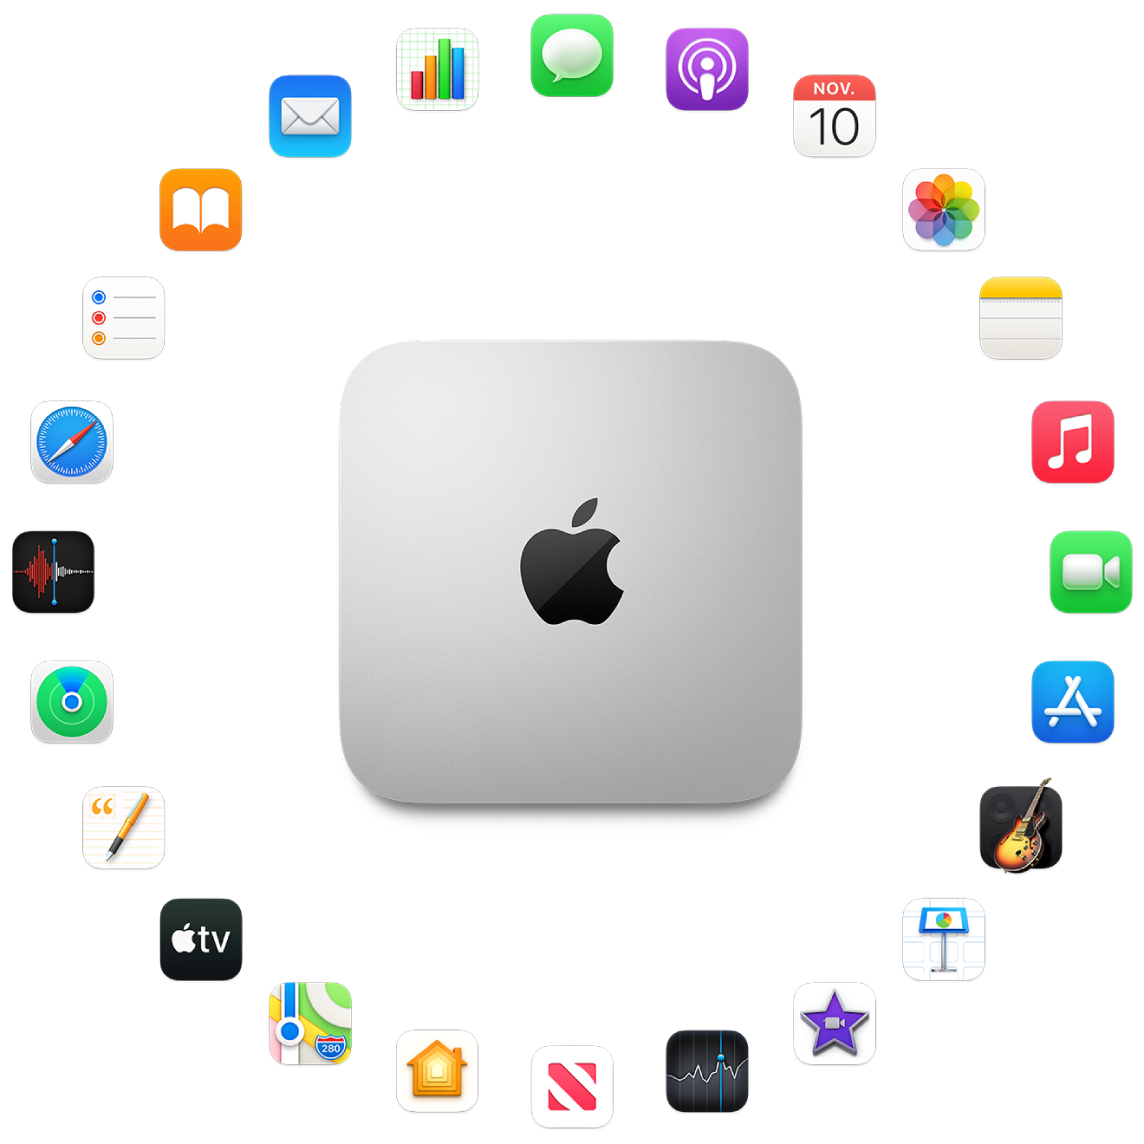 Mac mini rodeado pelos ícones dos apps que vêm instalados e que são descritos nas seções a seguir.